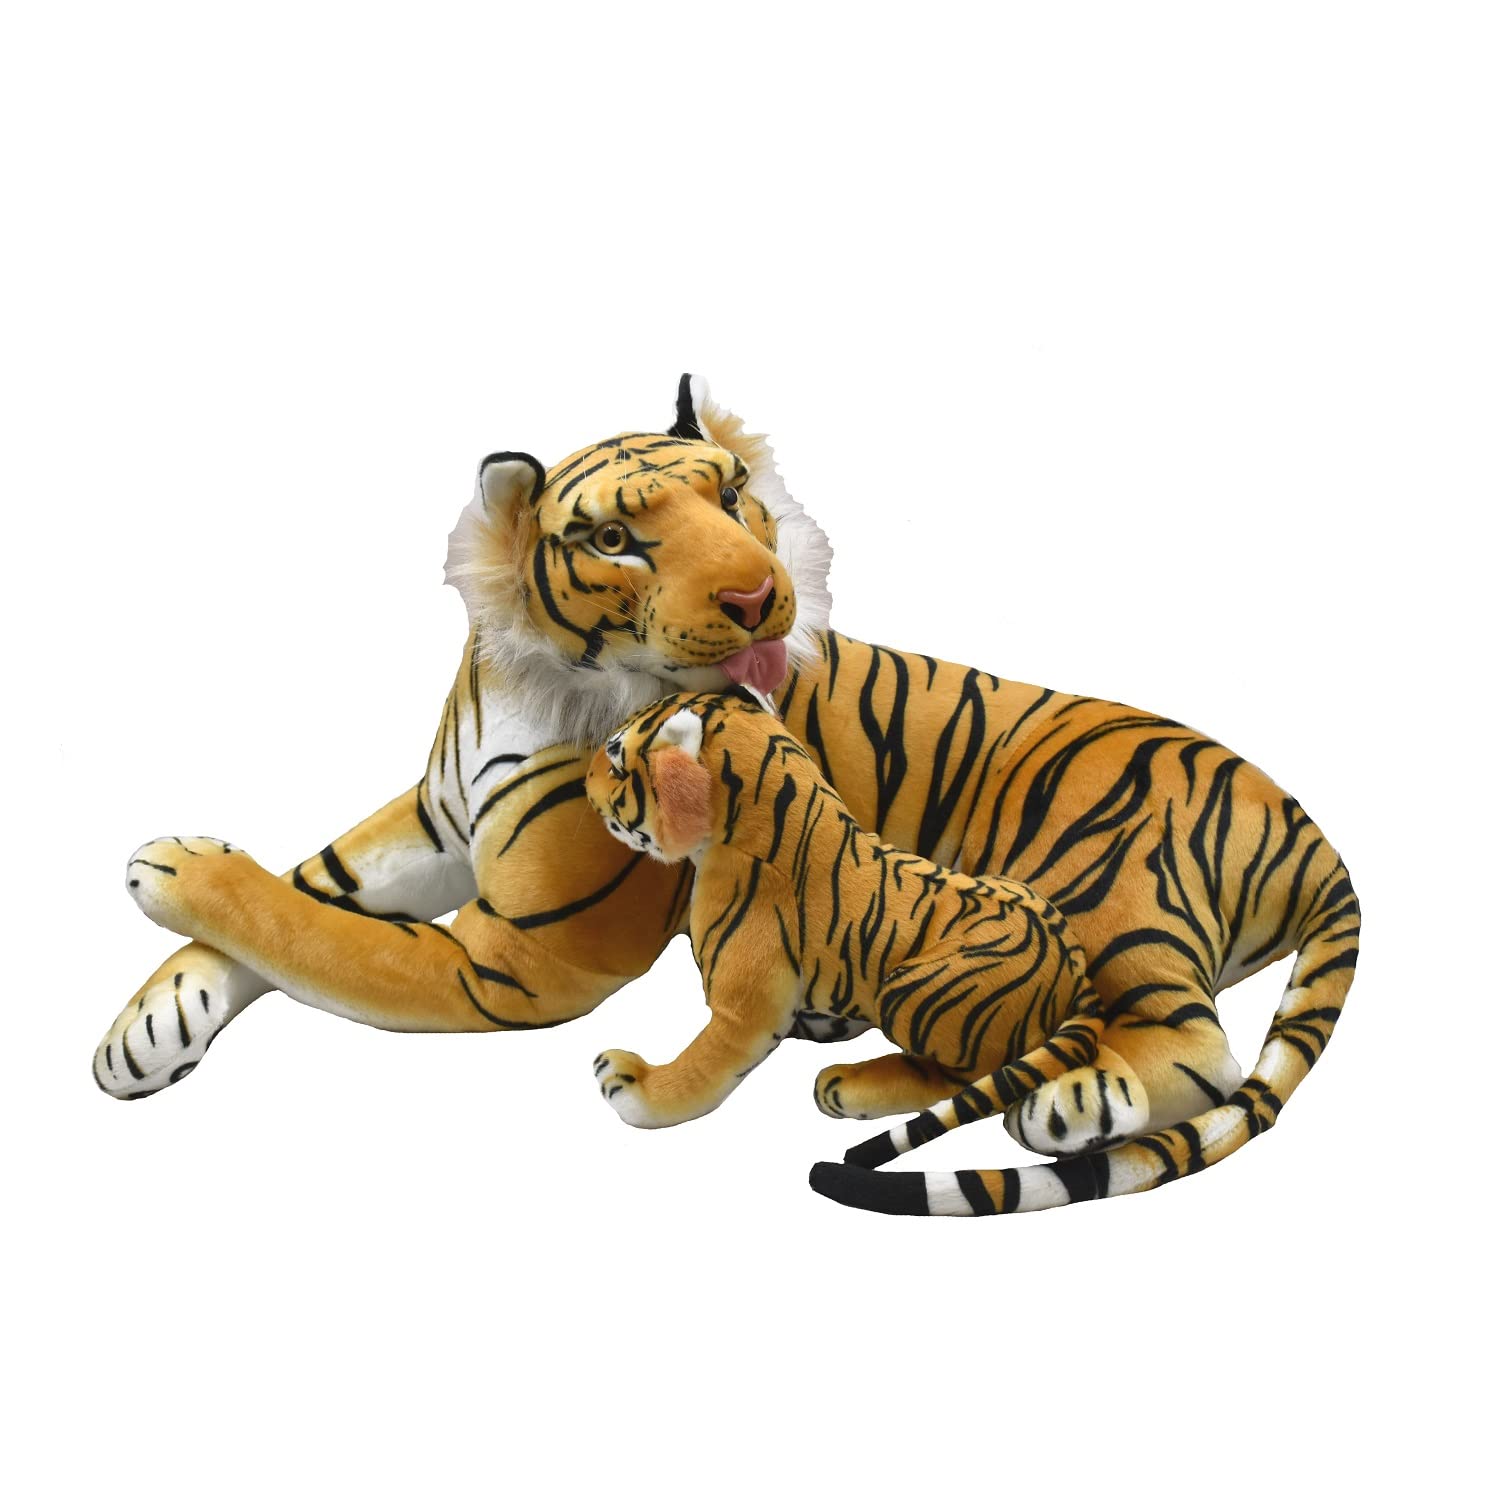 Geschenkestadl Tiger XXL Plüschtier 90cm Mama mit Kind Tigerjunges Kuscheltier Braun Softtier Stofftier